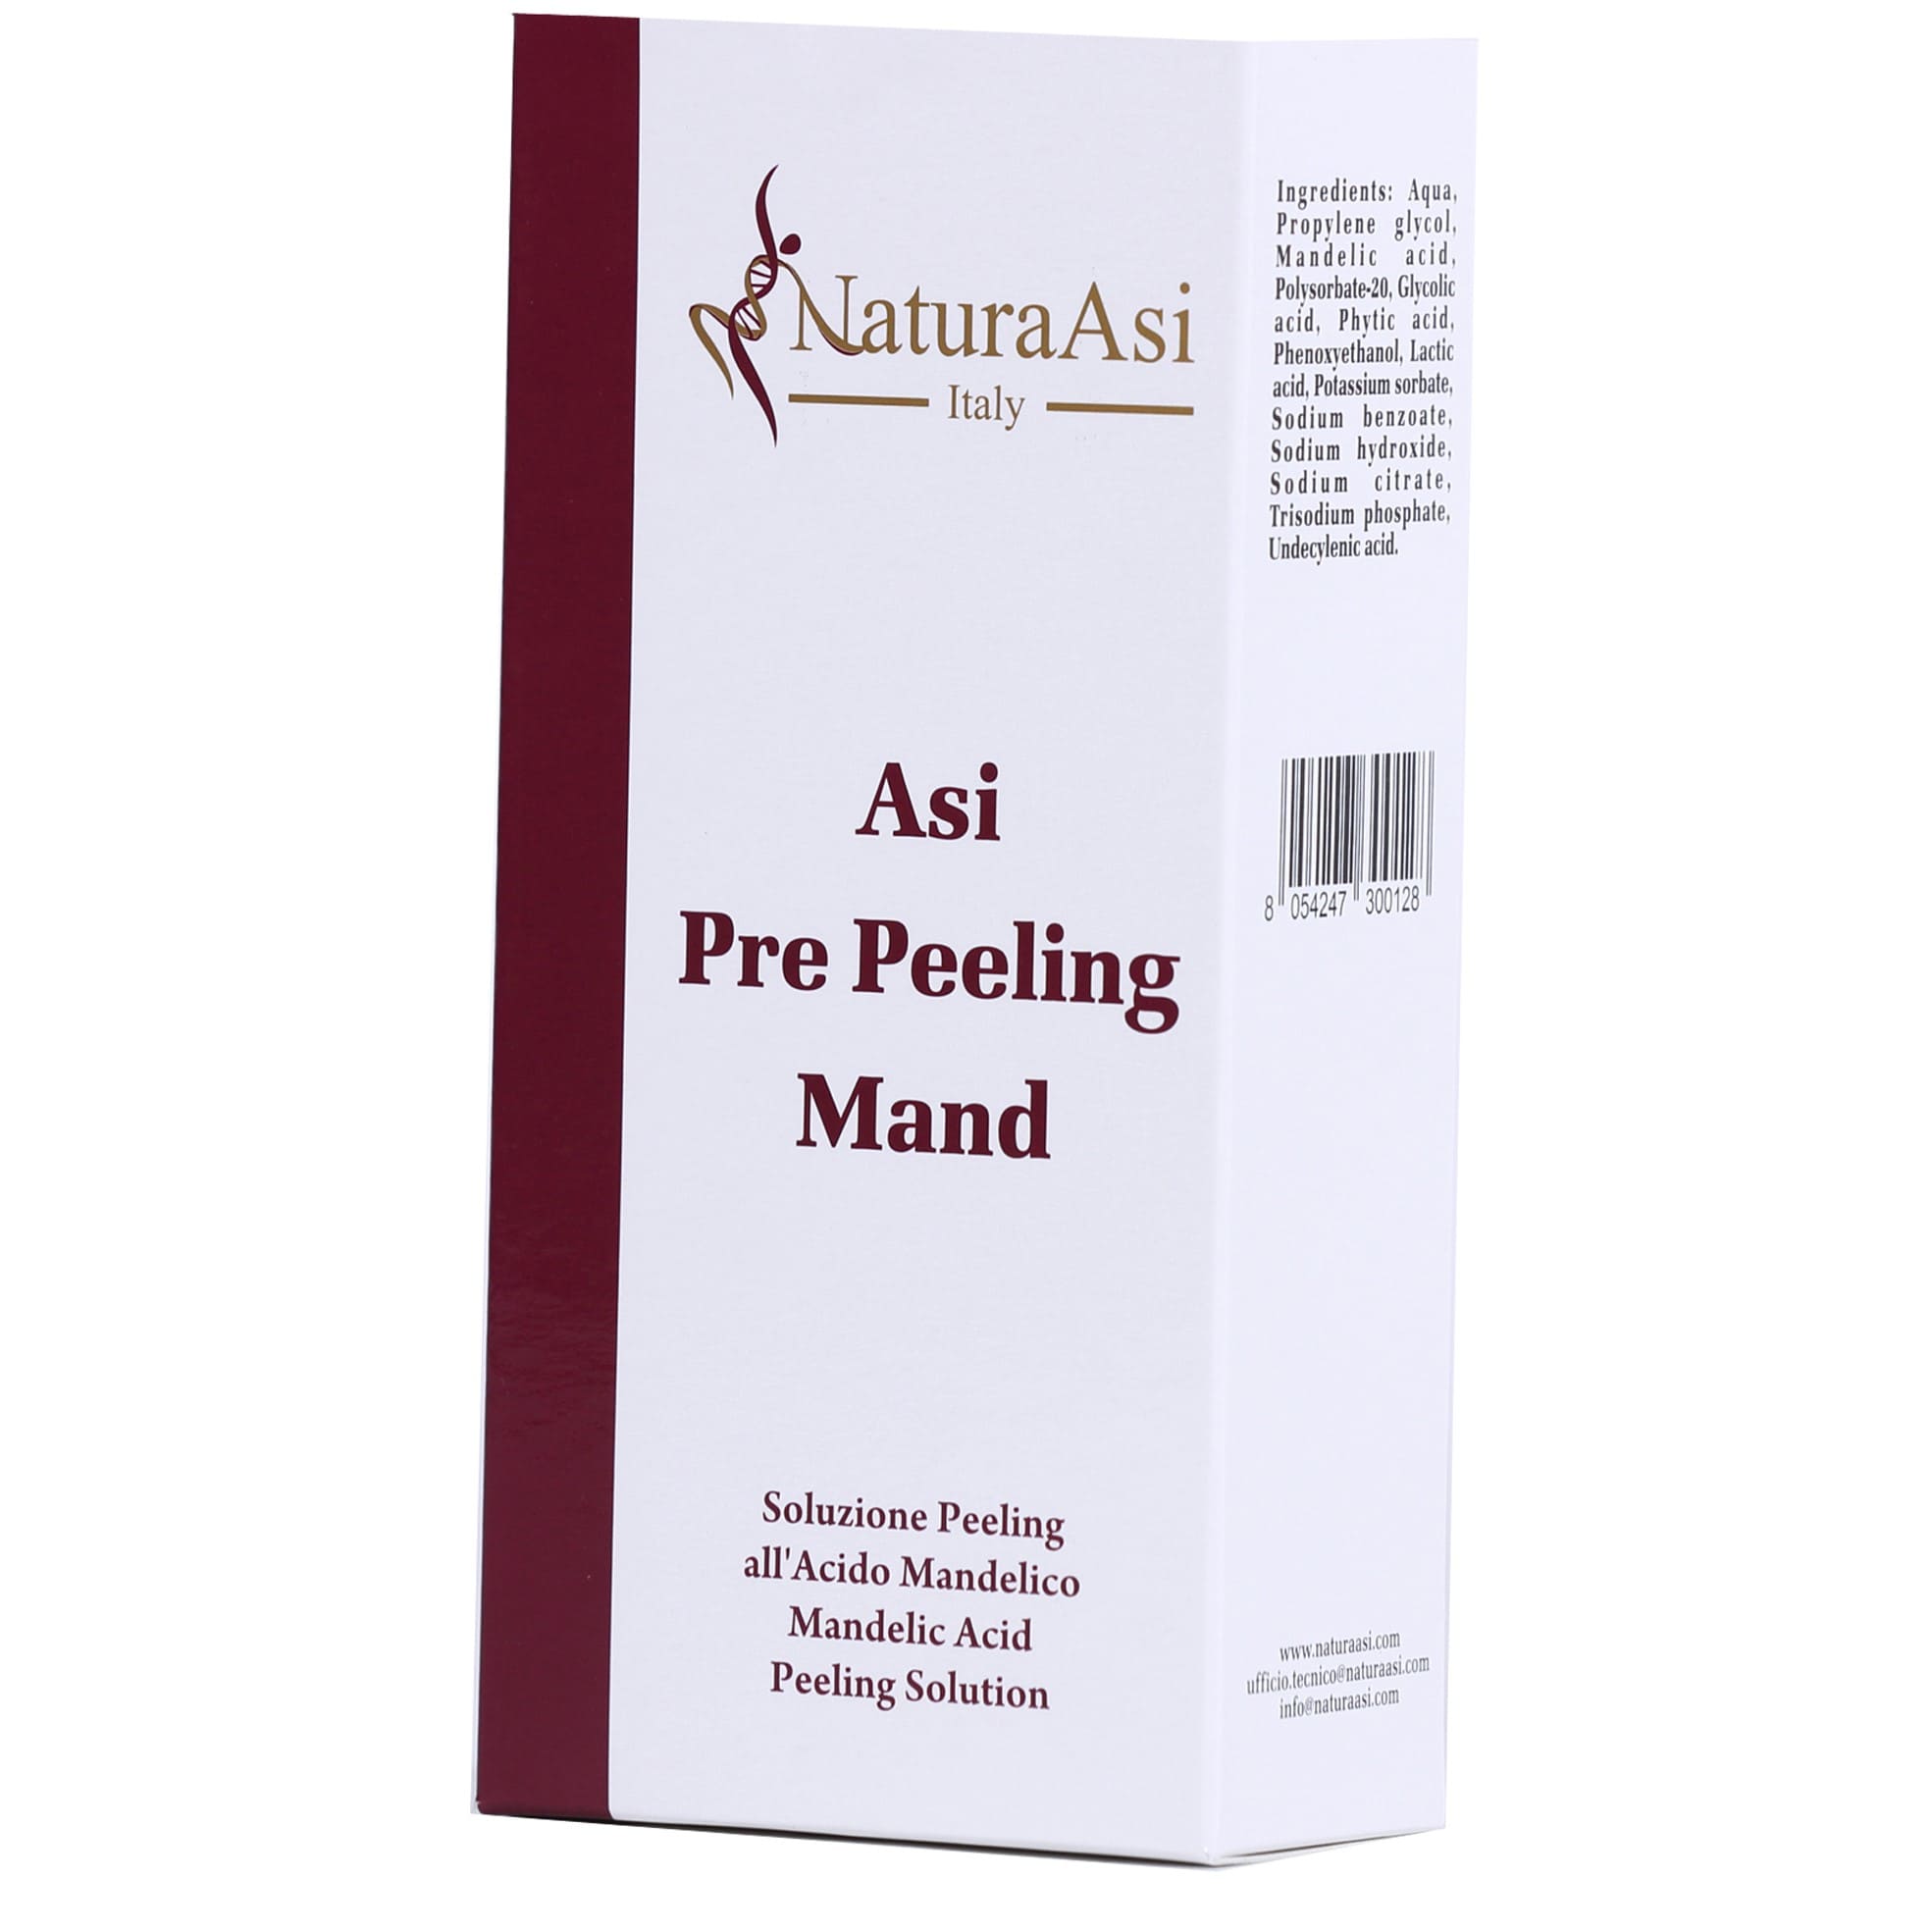 ASI PRE PEELING MAND | NaturaAsi™